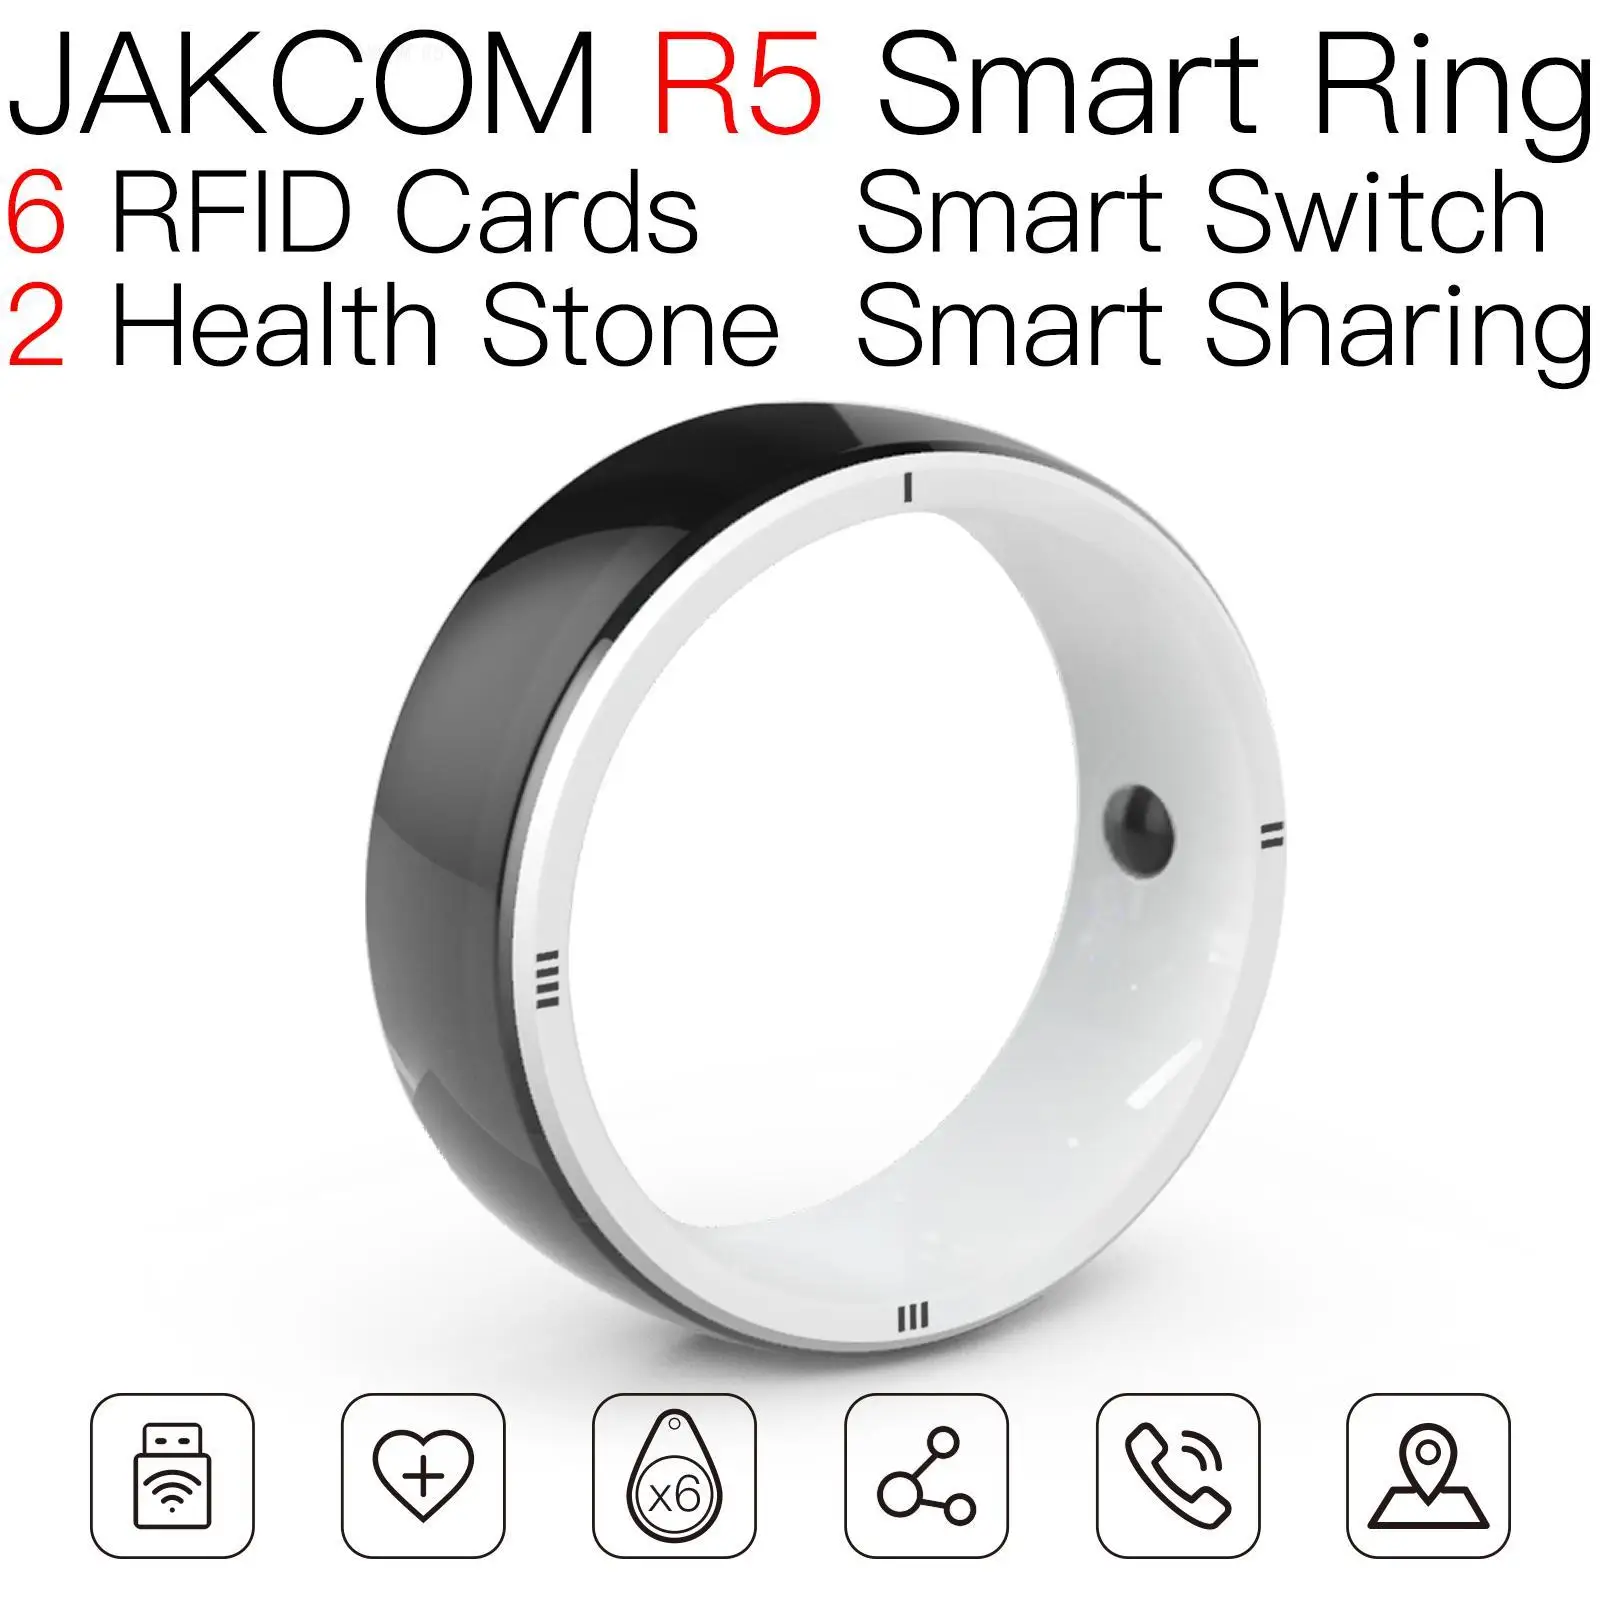 

Умное кольцо JAKCOM R5, лучше 7 байт, uid, сменная карта, zero rfid чип, Ушная бирка, значок, клон аквариума, стандартное биометрическое украшение